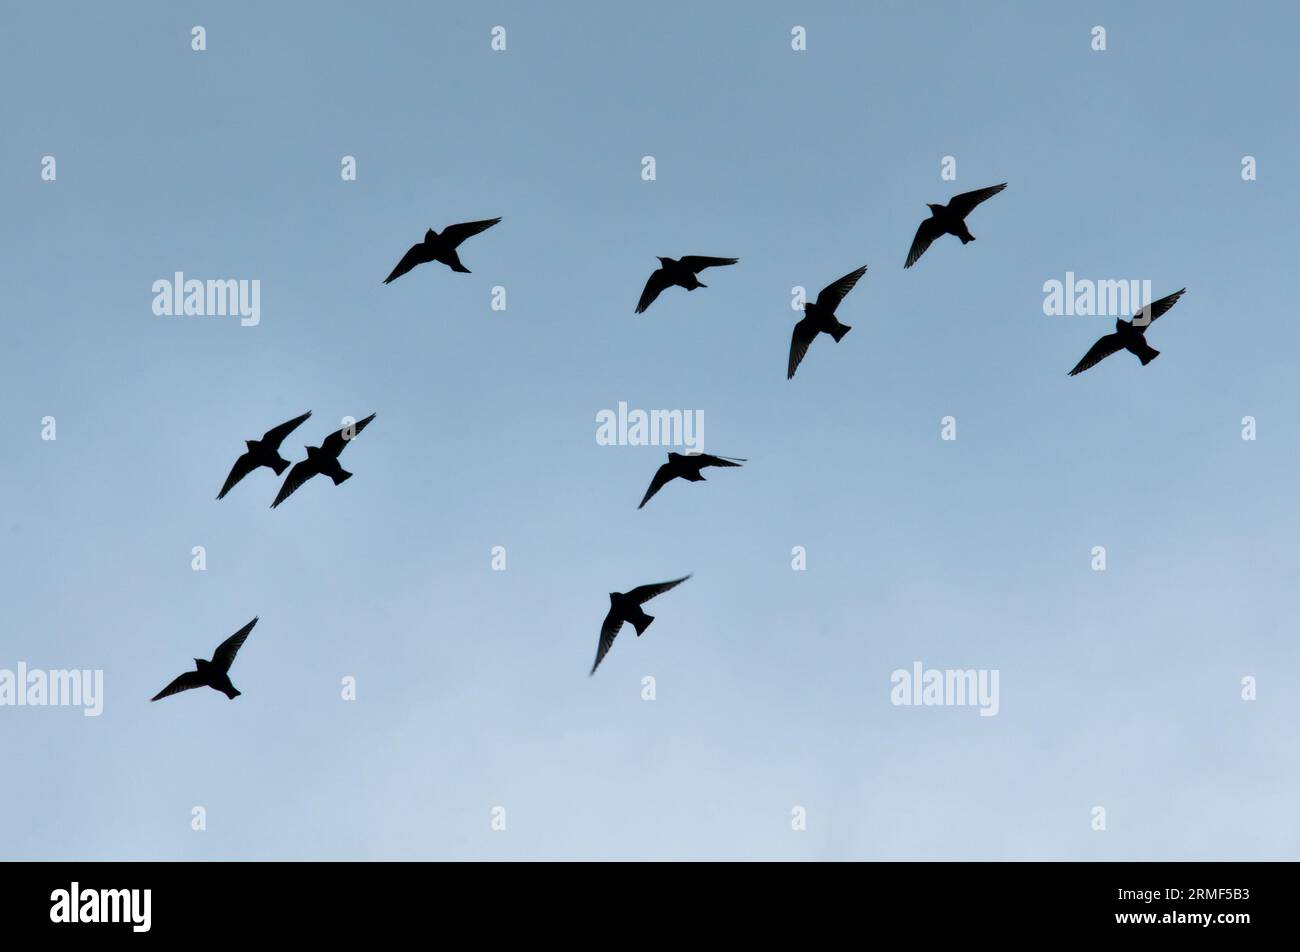 Troupeau d'oiseaux volant dans le ciel. Silhouettes d'oiseaux visibles. Migration au printemps. république tchèque nature. Banque D'Images